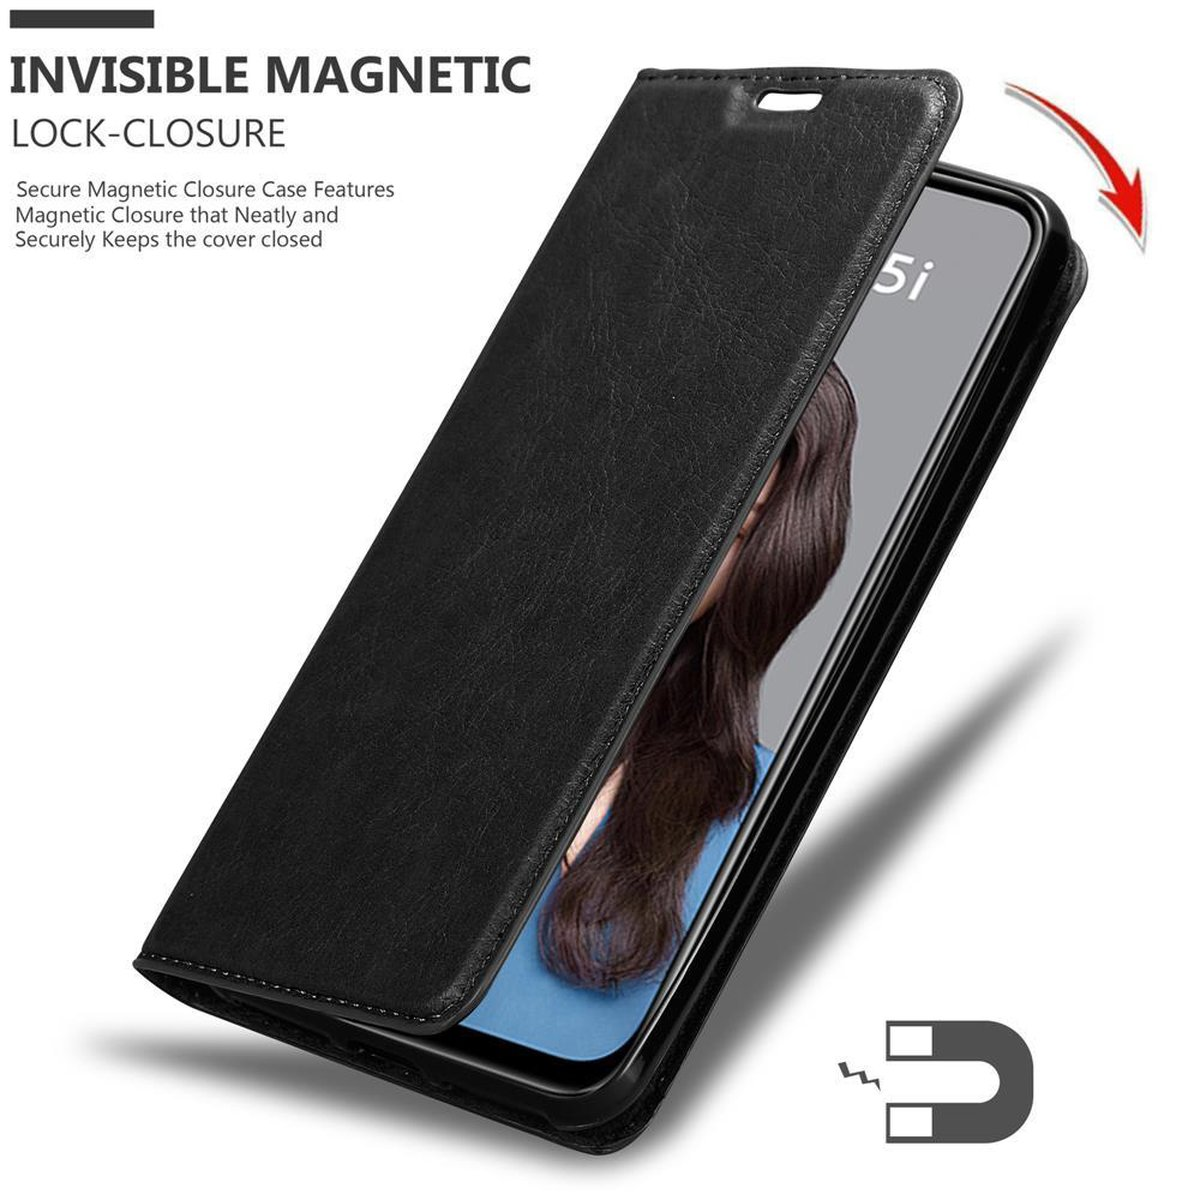 LITE Huawei, CADORABO Book P20 Bookcover, Hülle 5i Invisible Magnet, / NOVA SCHWARZ NACHT 2019,